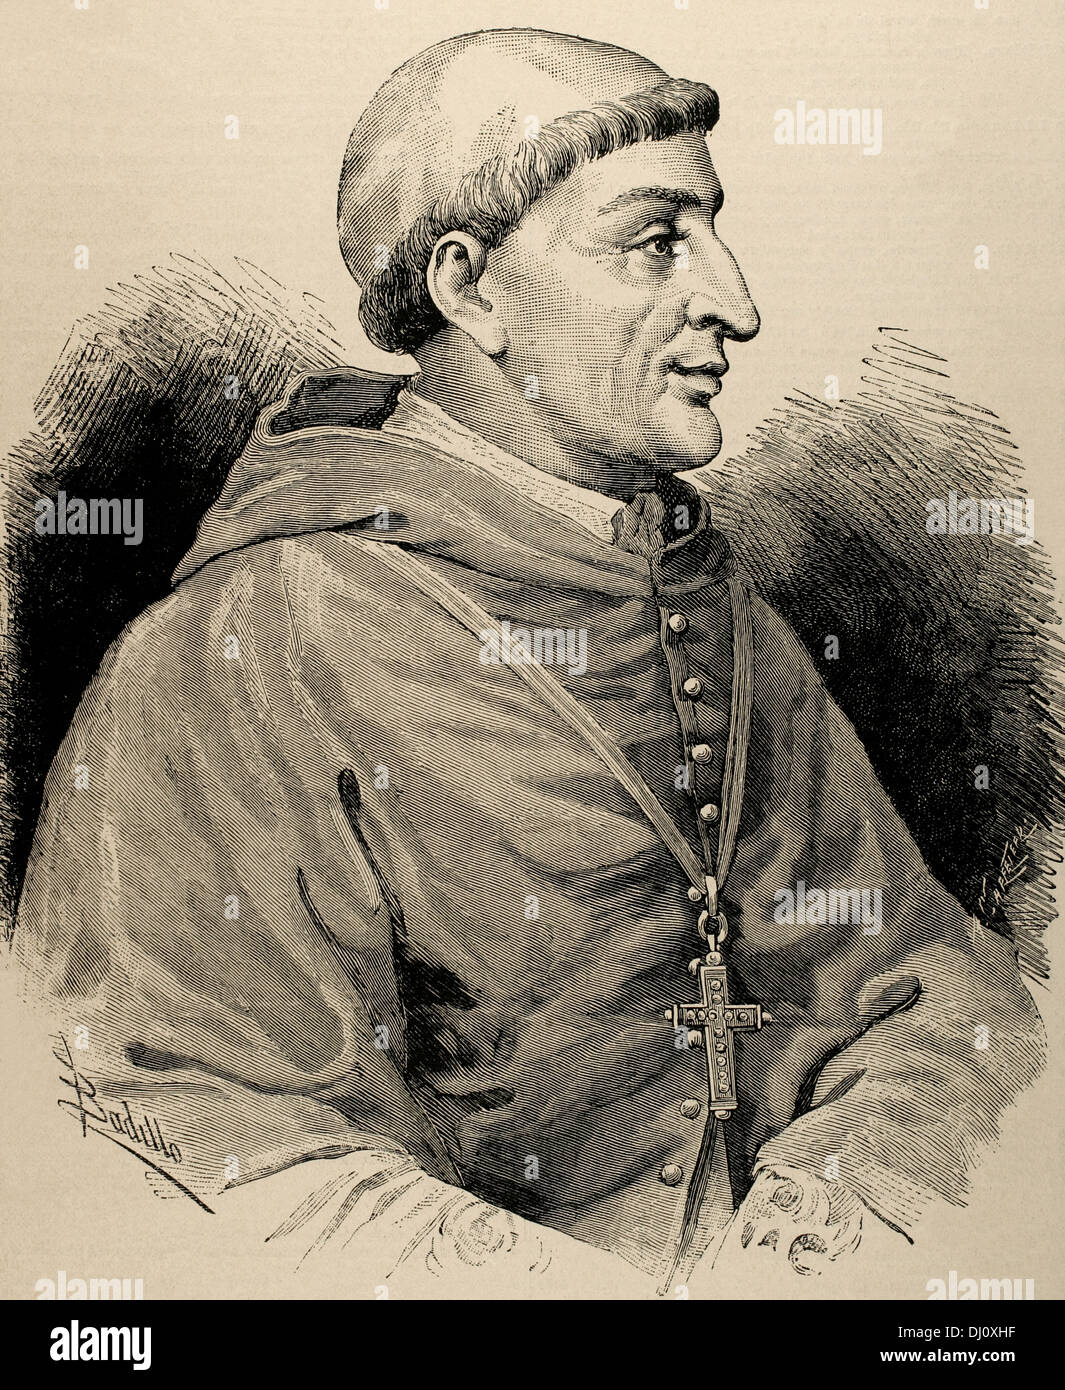 Francisco Jiménez de Cisneros (1436-1517). Cardinal et homme d'État espagnol. Gravure par Carretero. La Ilustracion, 1887. Banque D'Images